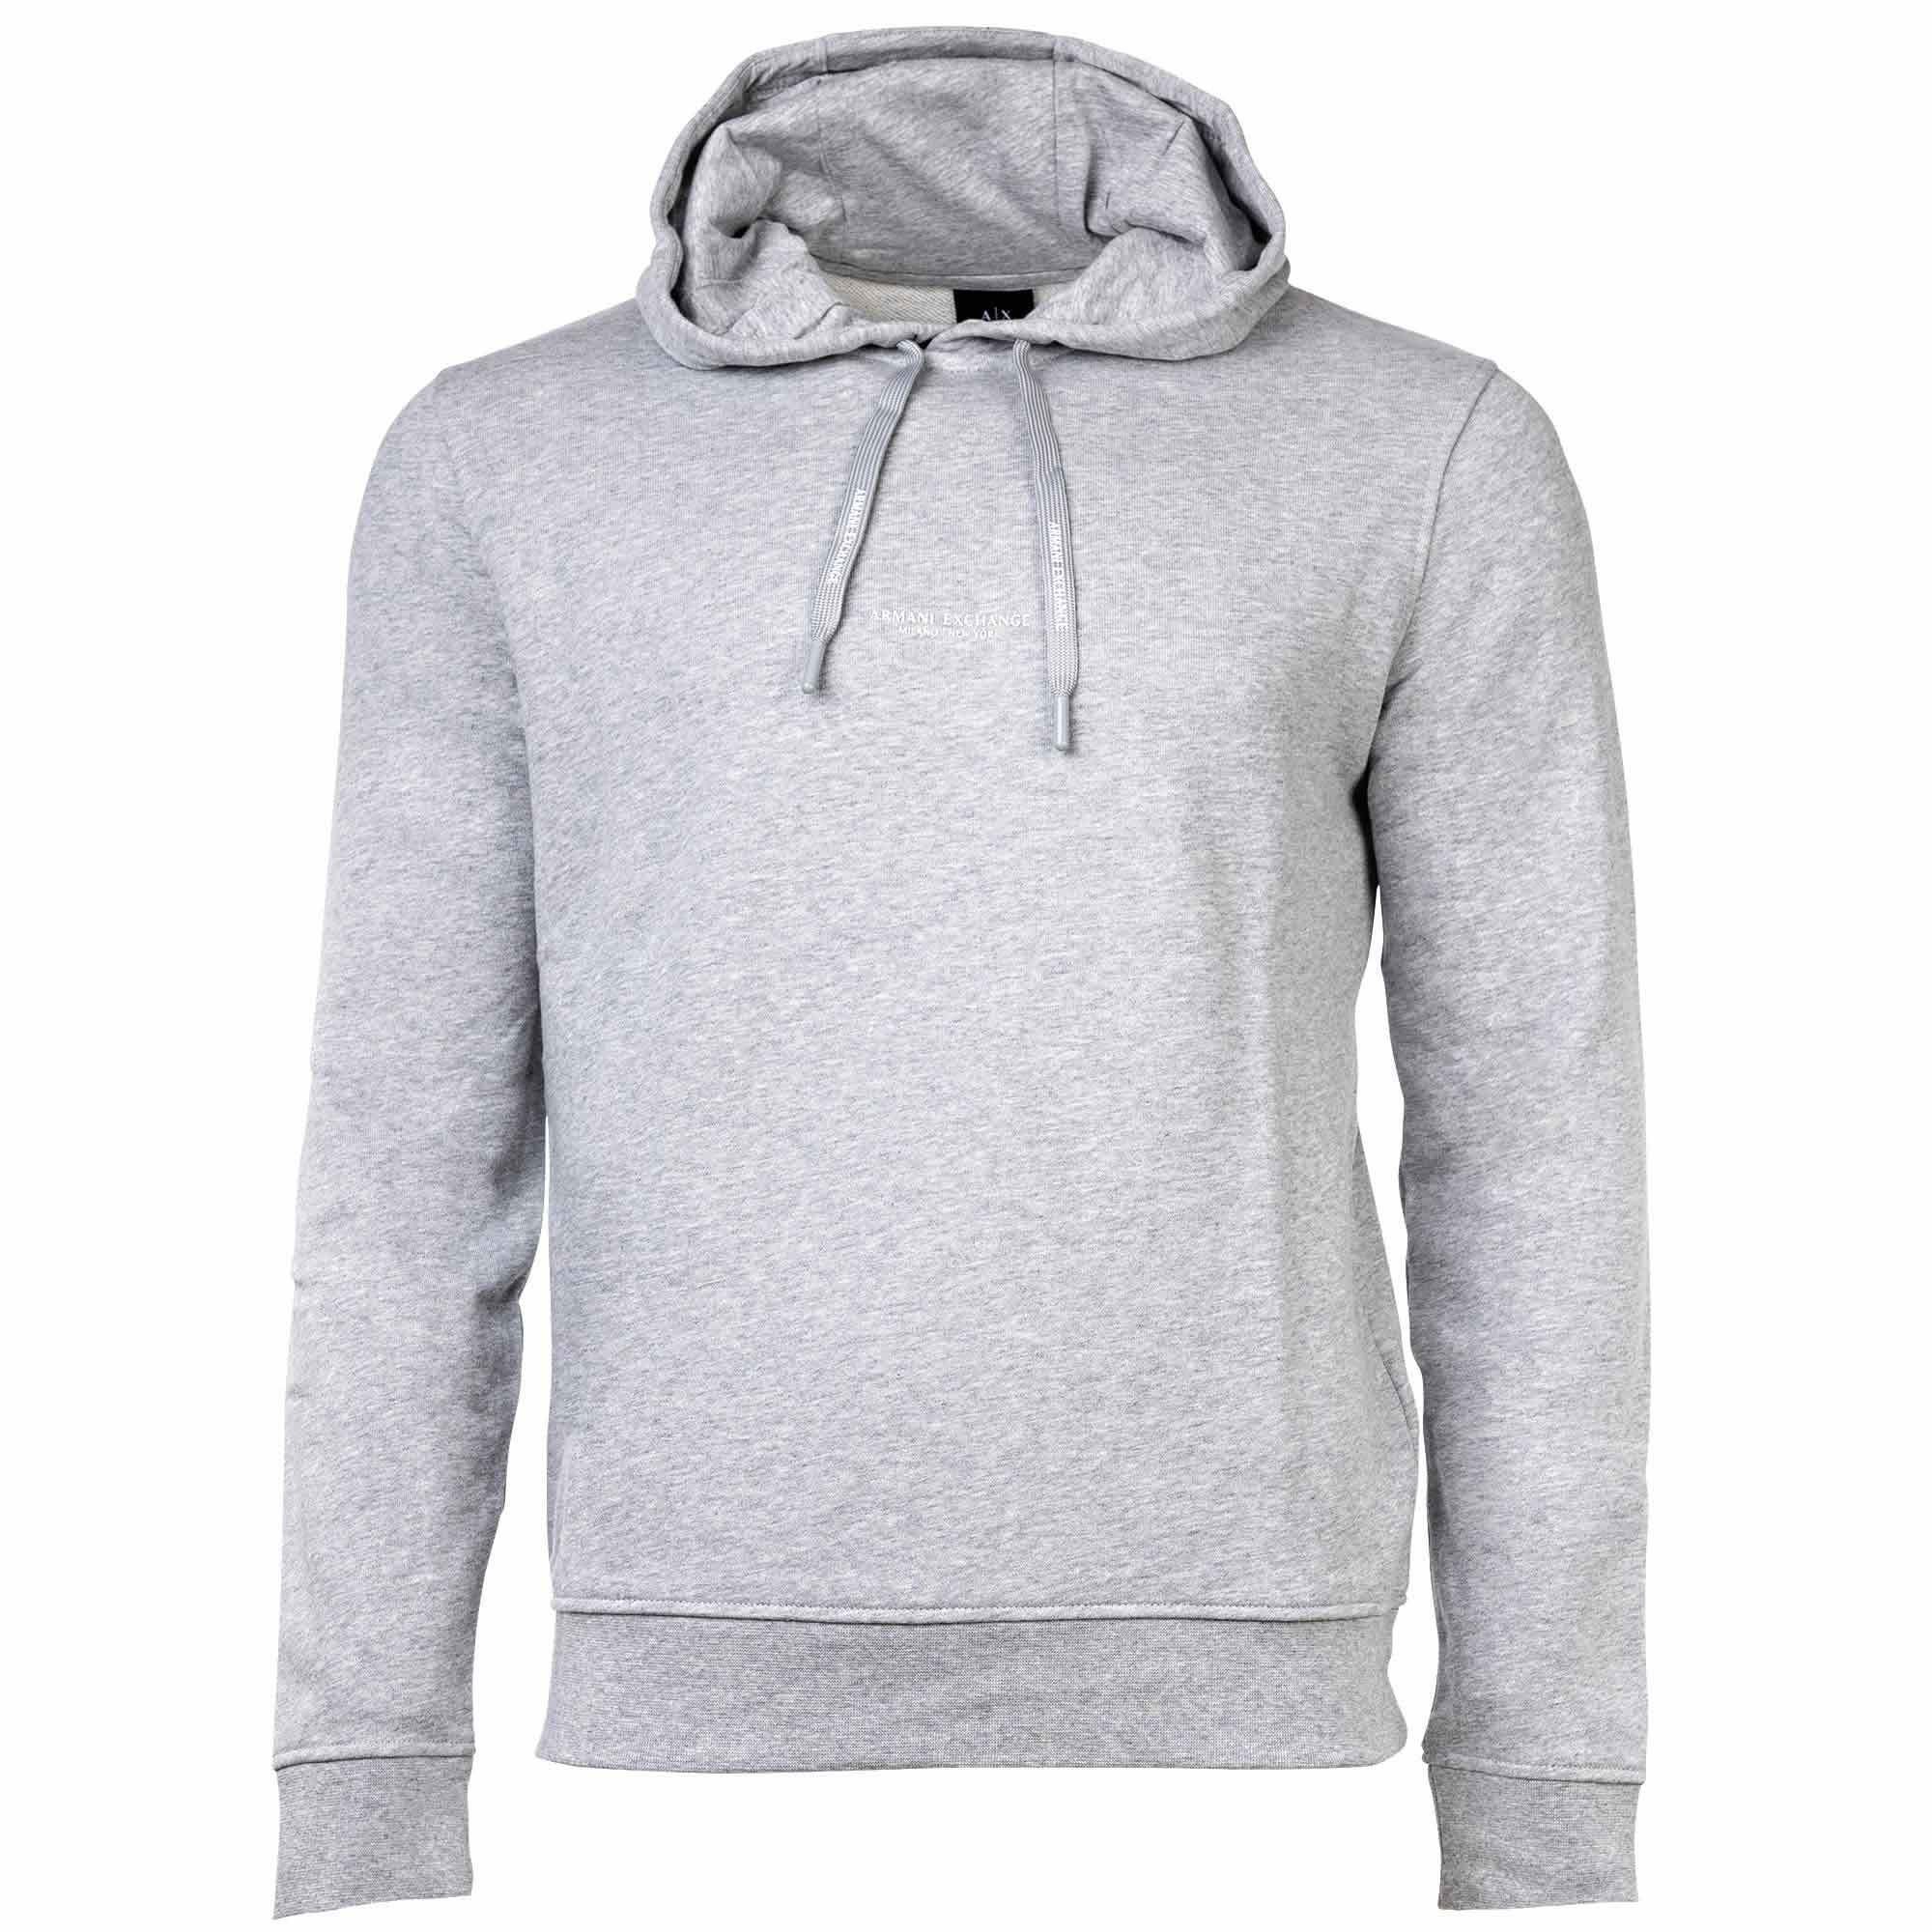 ARMANI EXCHANGE Sweatshirt Herren Sweatshirt Grau uni Logo, Kapuze, Hoodie, - meliert